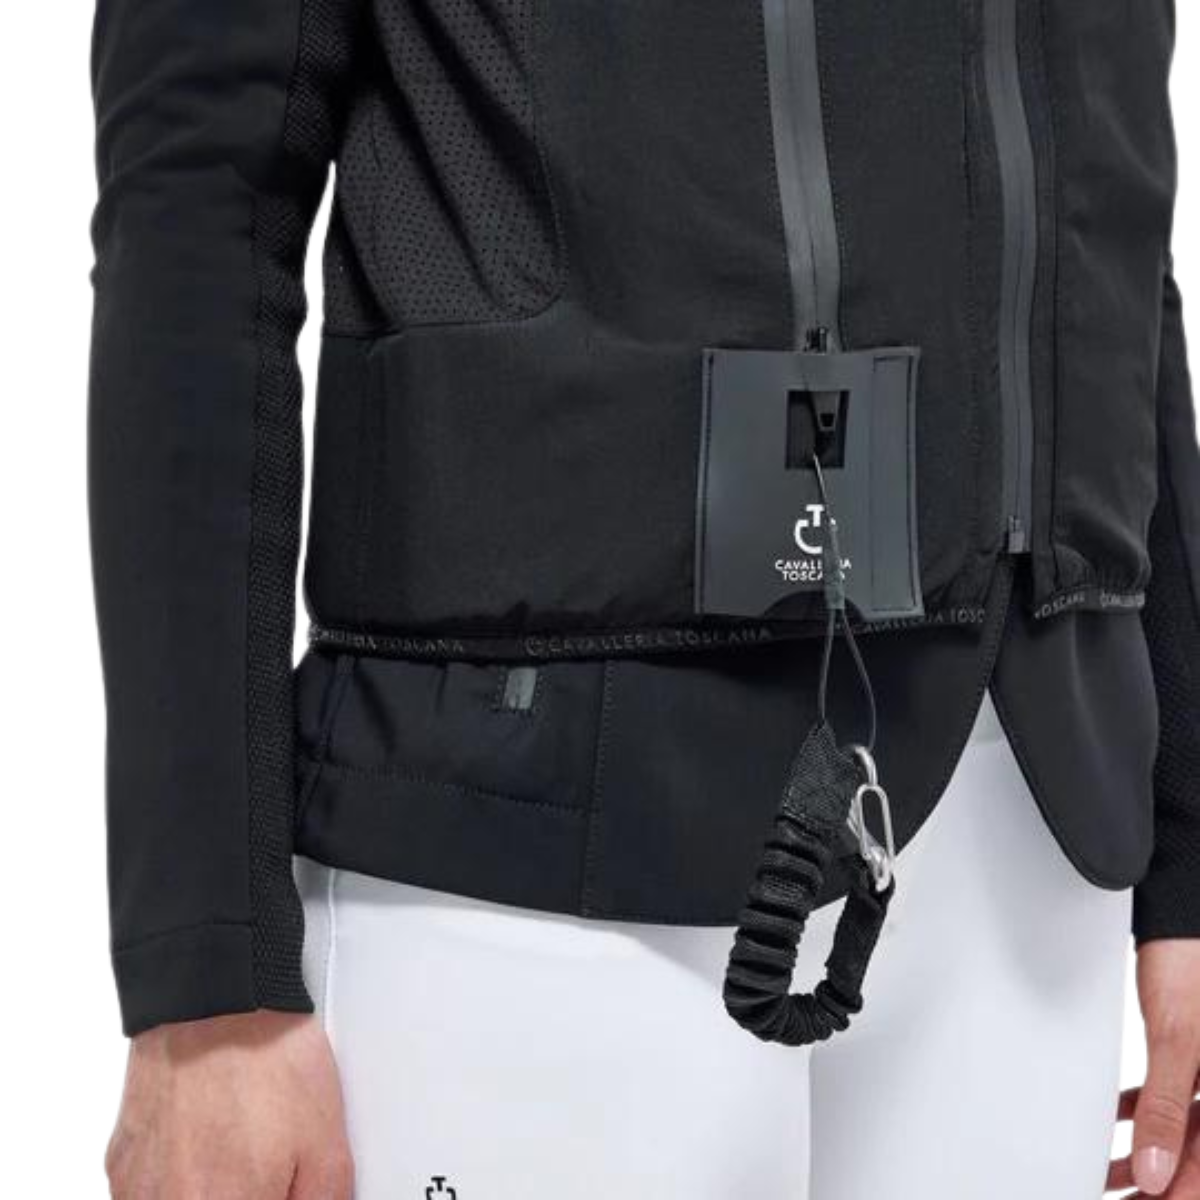 Cavalleria Toscana 'R-Evo' Air Vest in Black 